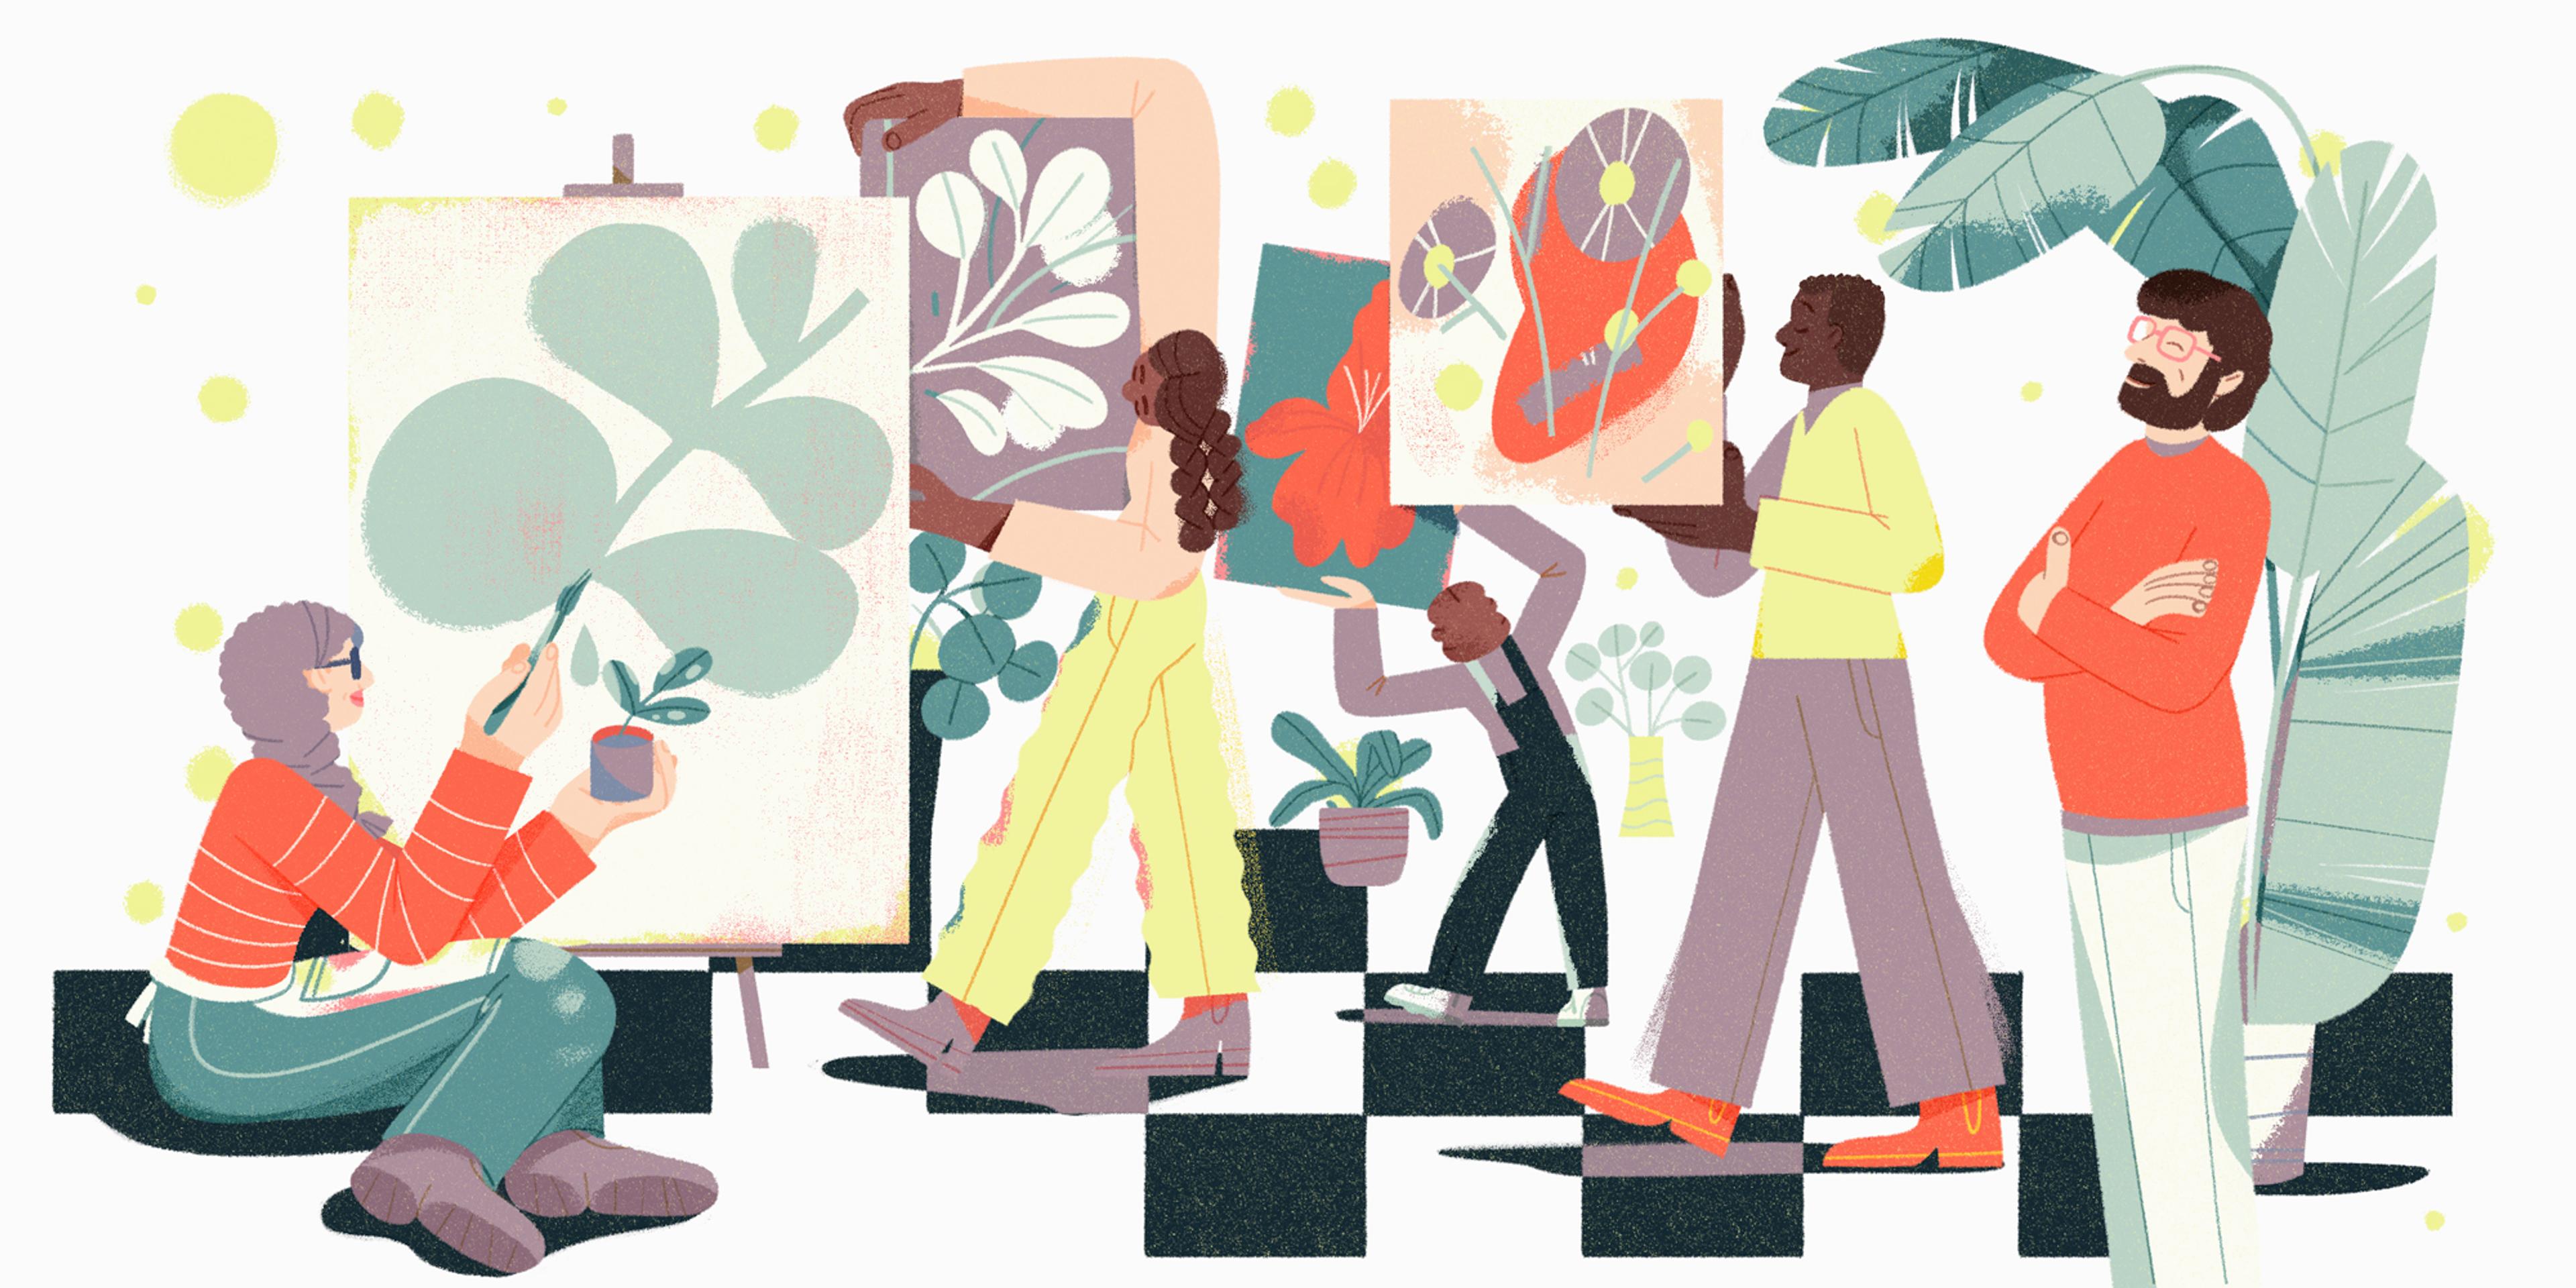 Une illustration montre un groupe de personnes engagées dans diverses activités créatives, notamment la peinture et le dessin, dans une pièce remplie de plantes et d'éléments décoratifs.